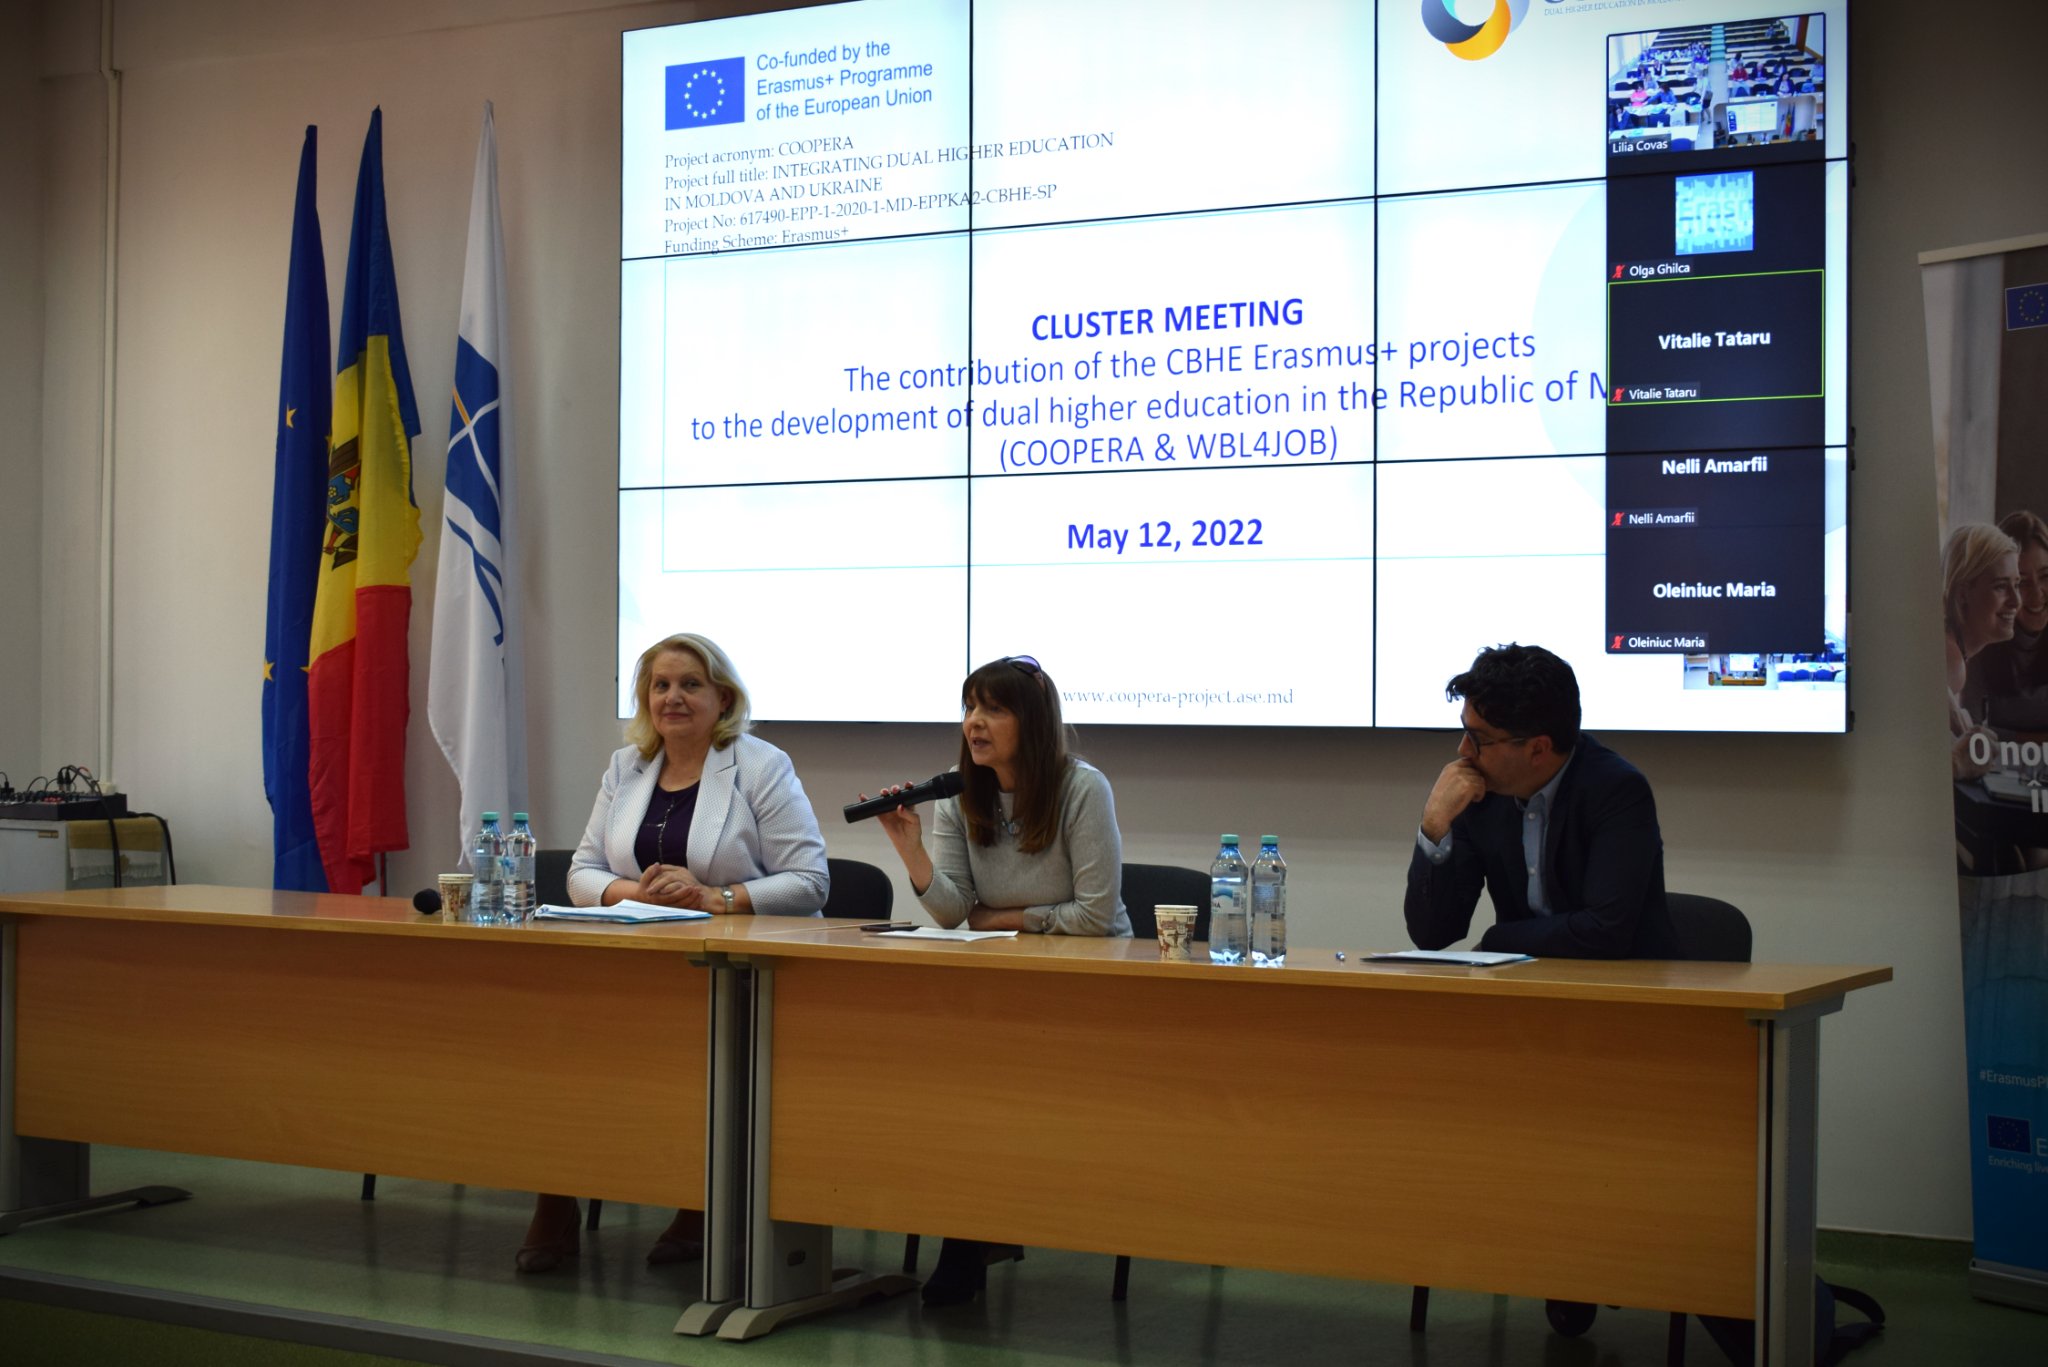 12 mai 2022 Dezvoltarea învățământului superior dual în Republica Moldova - şedinţă de tip CLUSTER, proiectul CBHE Erasmus+ WBL4JOB